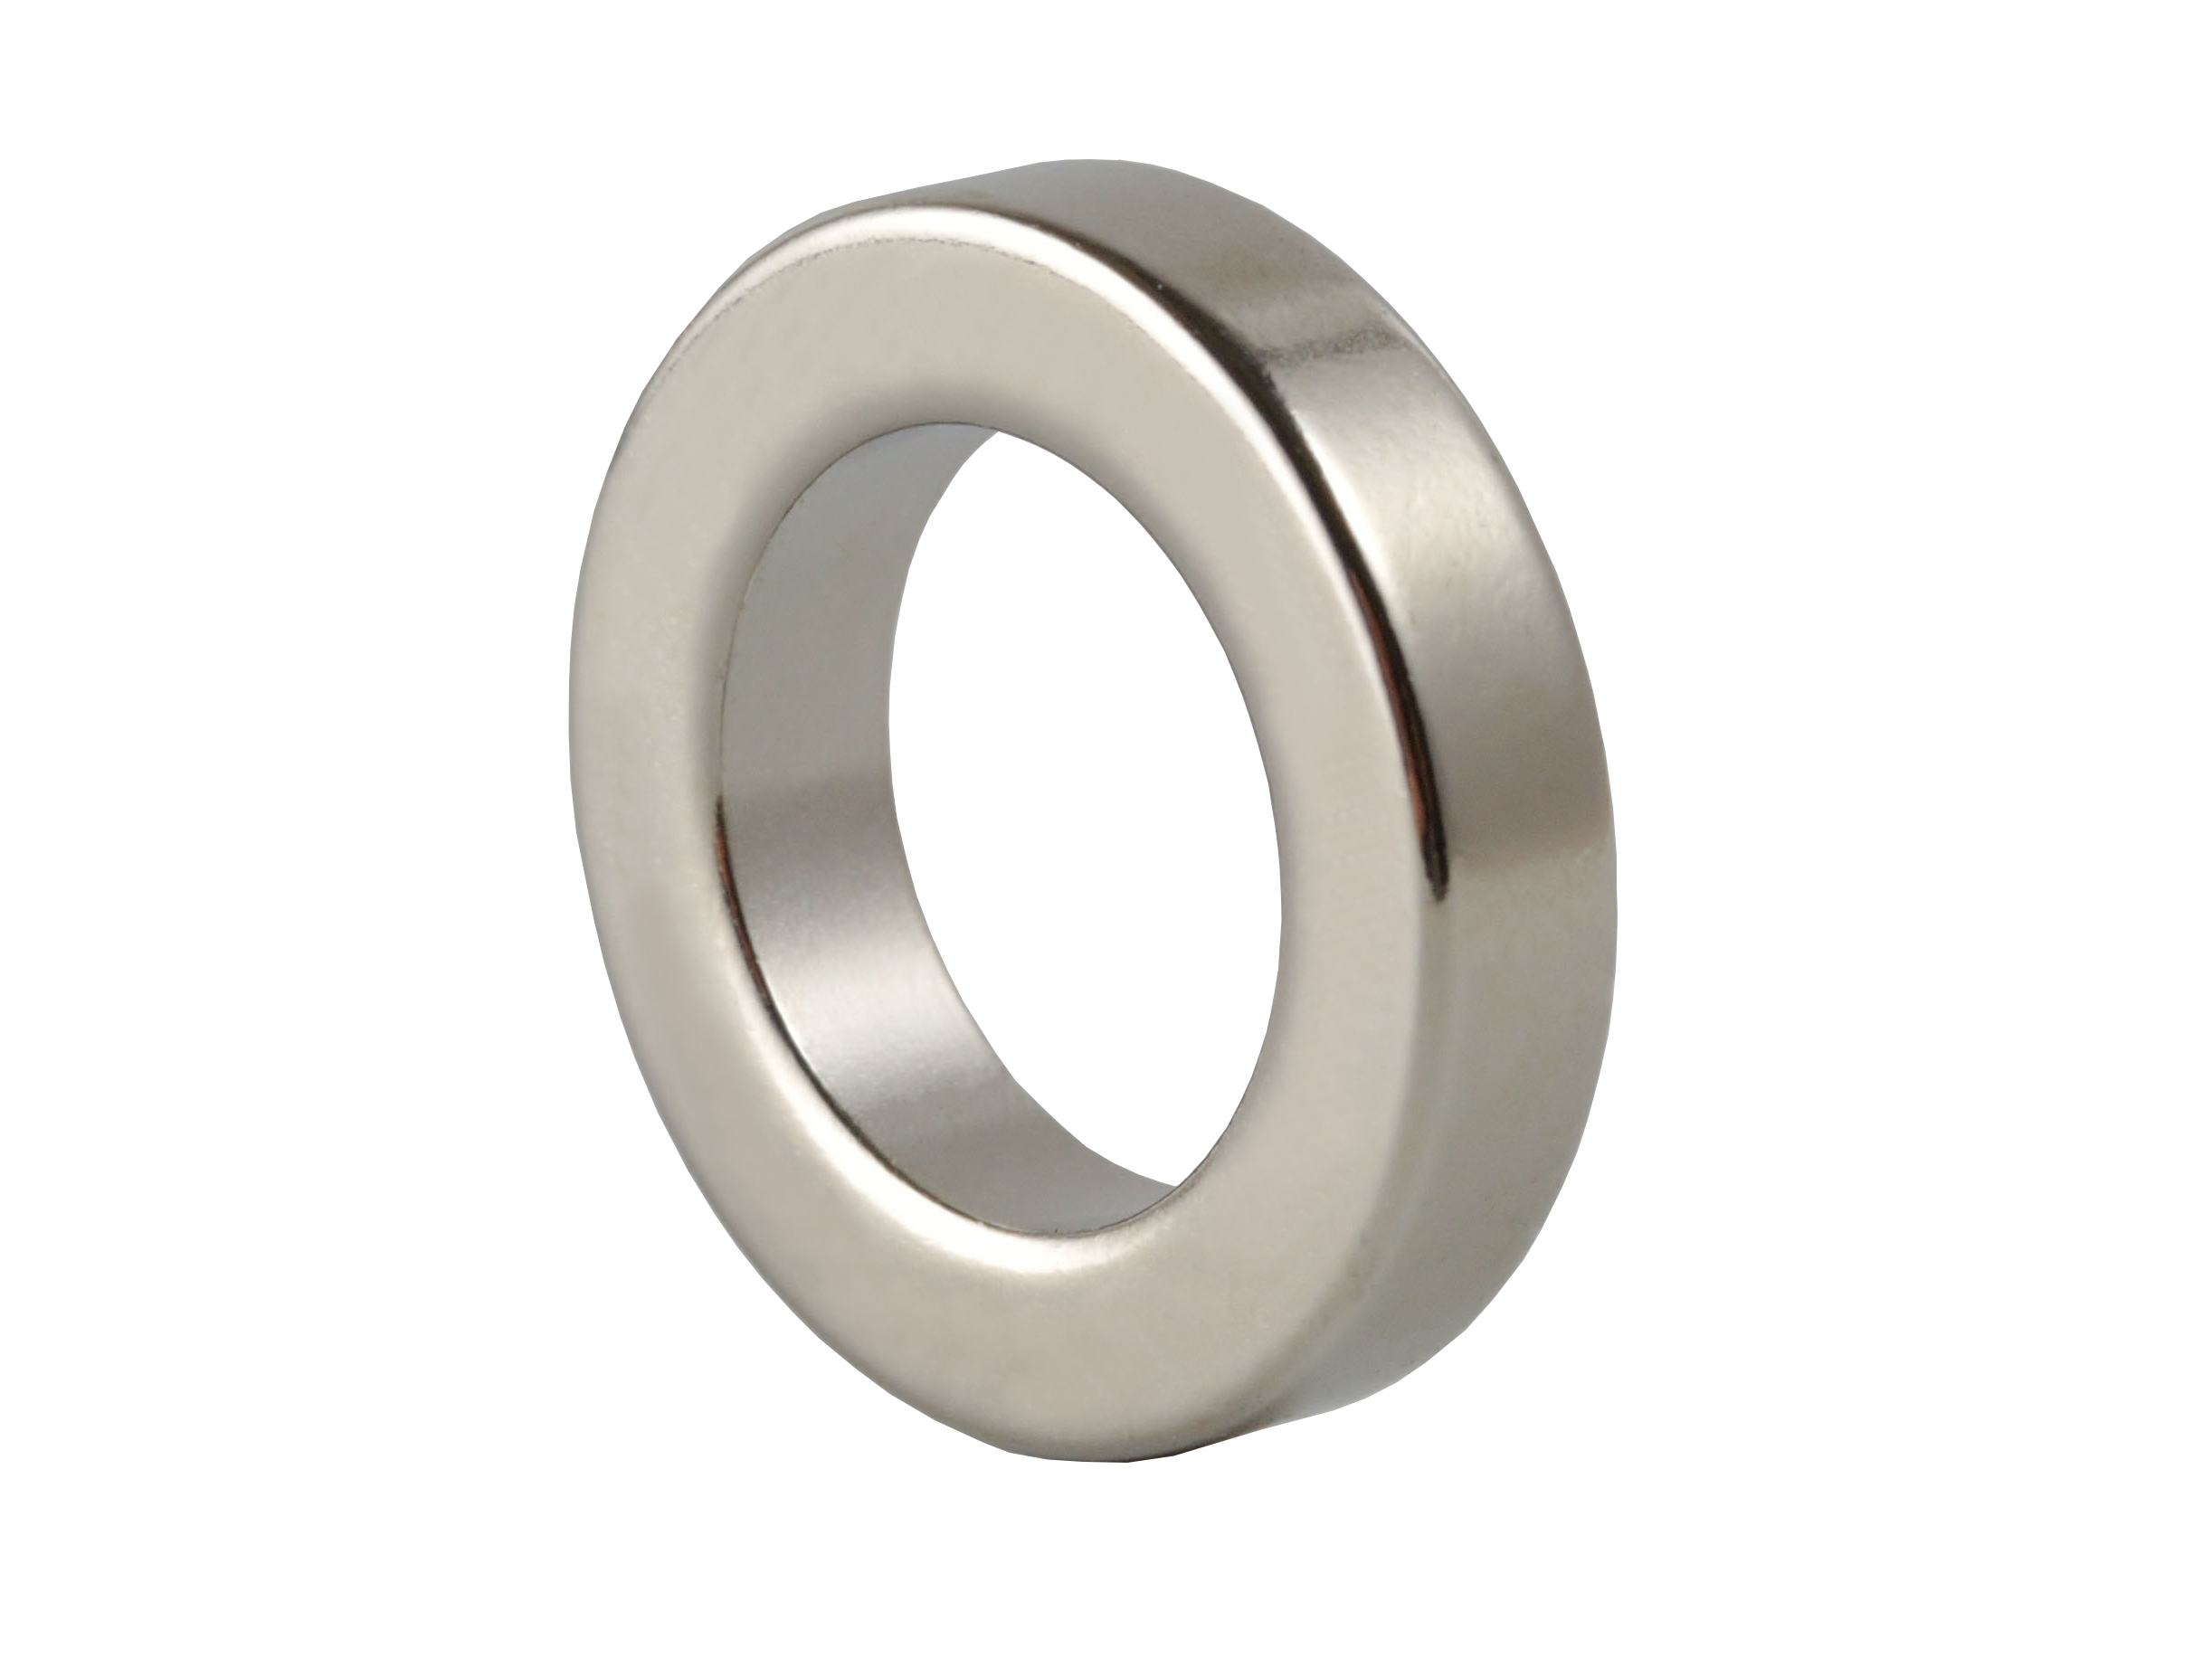 Ring‑Shaped Neodymium Magnet (NOR028) 